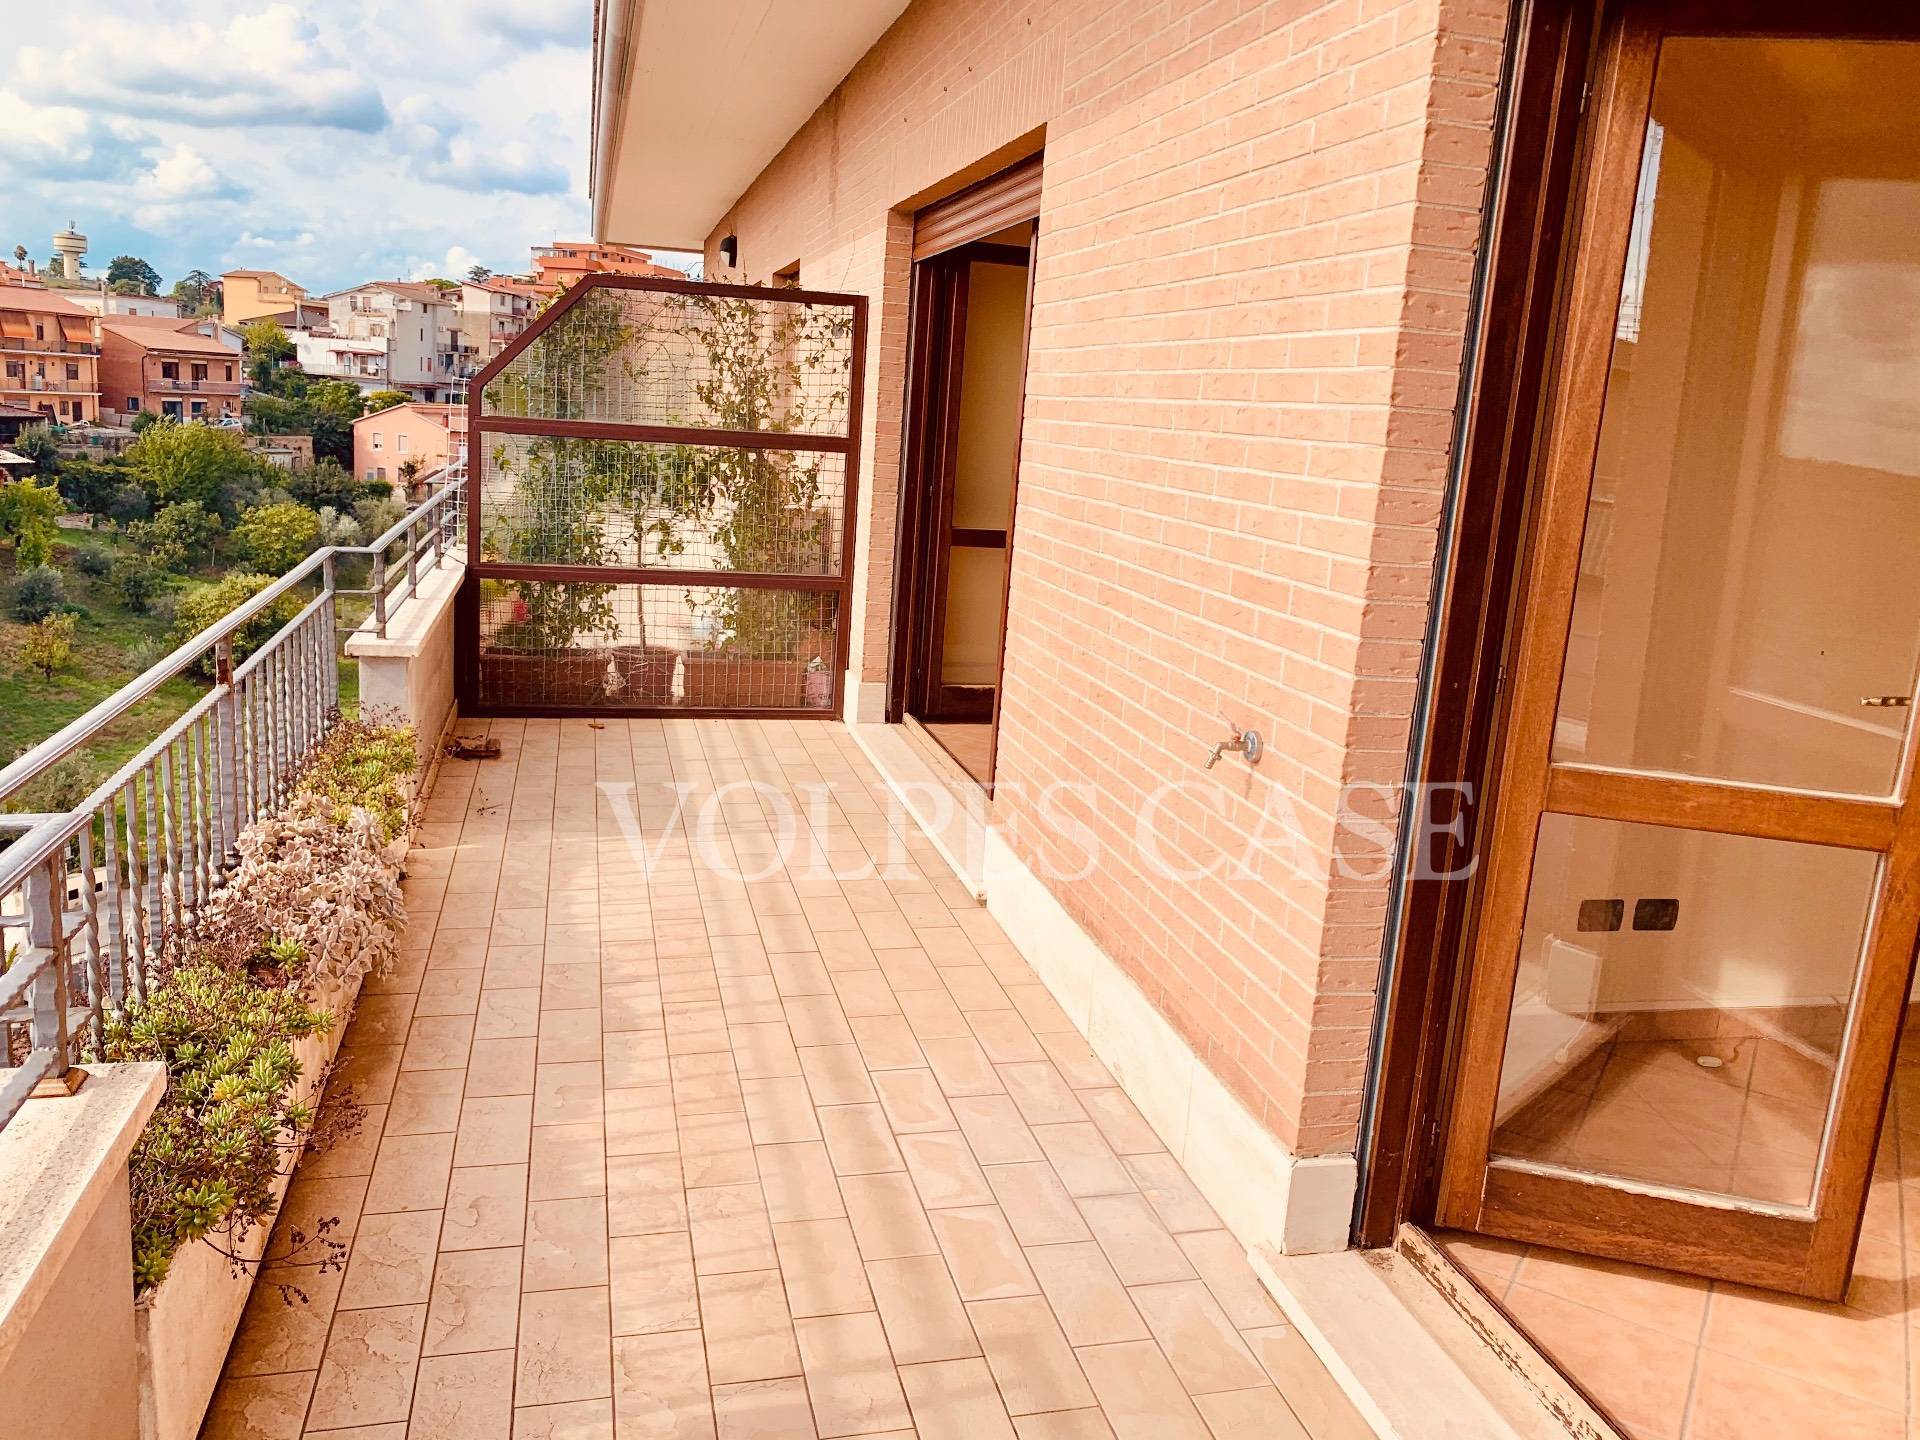 Appartamento in vendita a Riano, 3 locali, zona Località: LaRosta, prezzo € 150.000 | CambioCasa.it